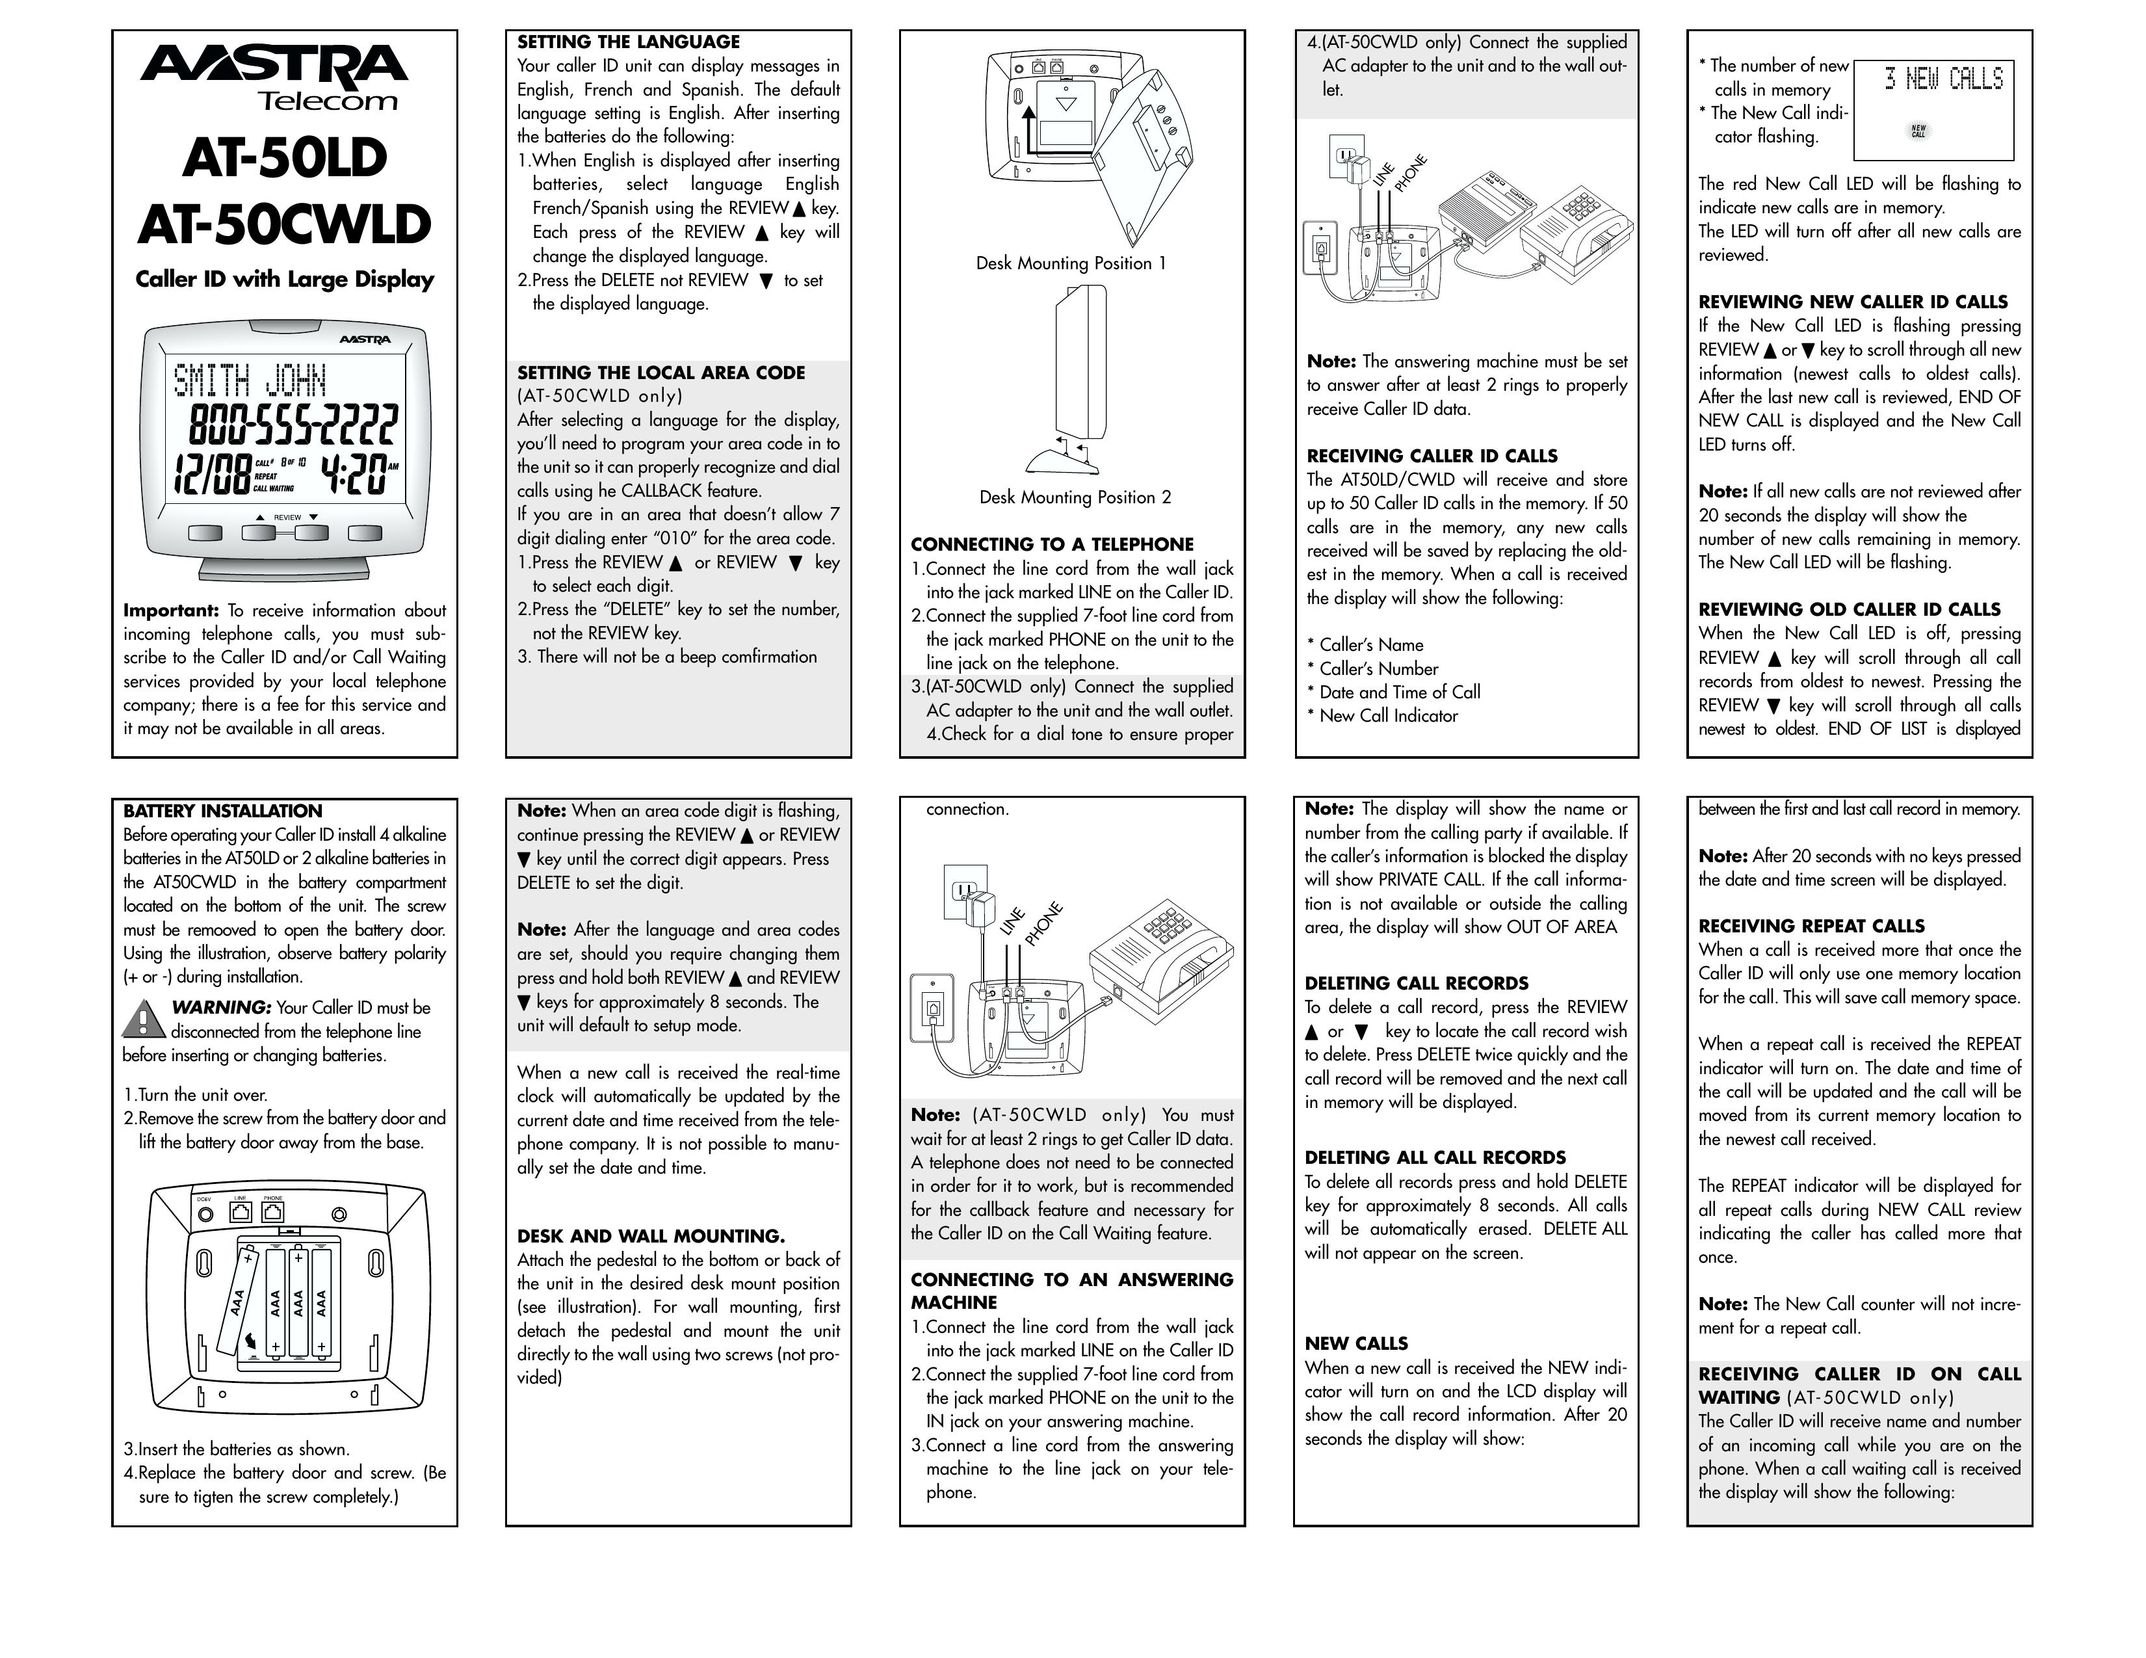 Aastra Telecom AT-50LD Caller ID Box User Manual